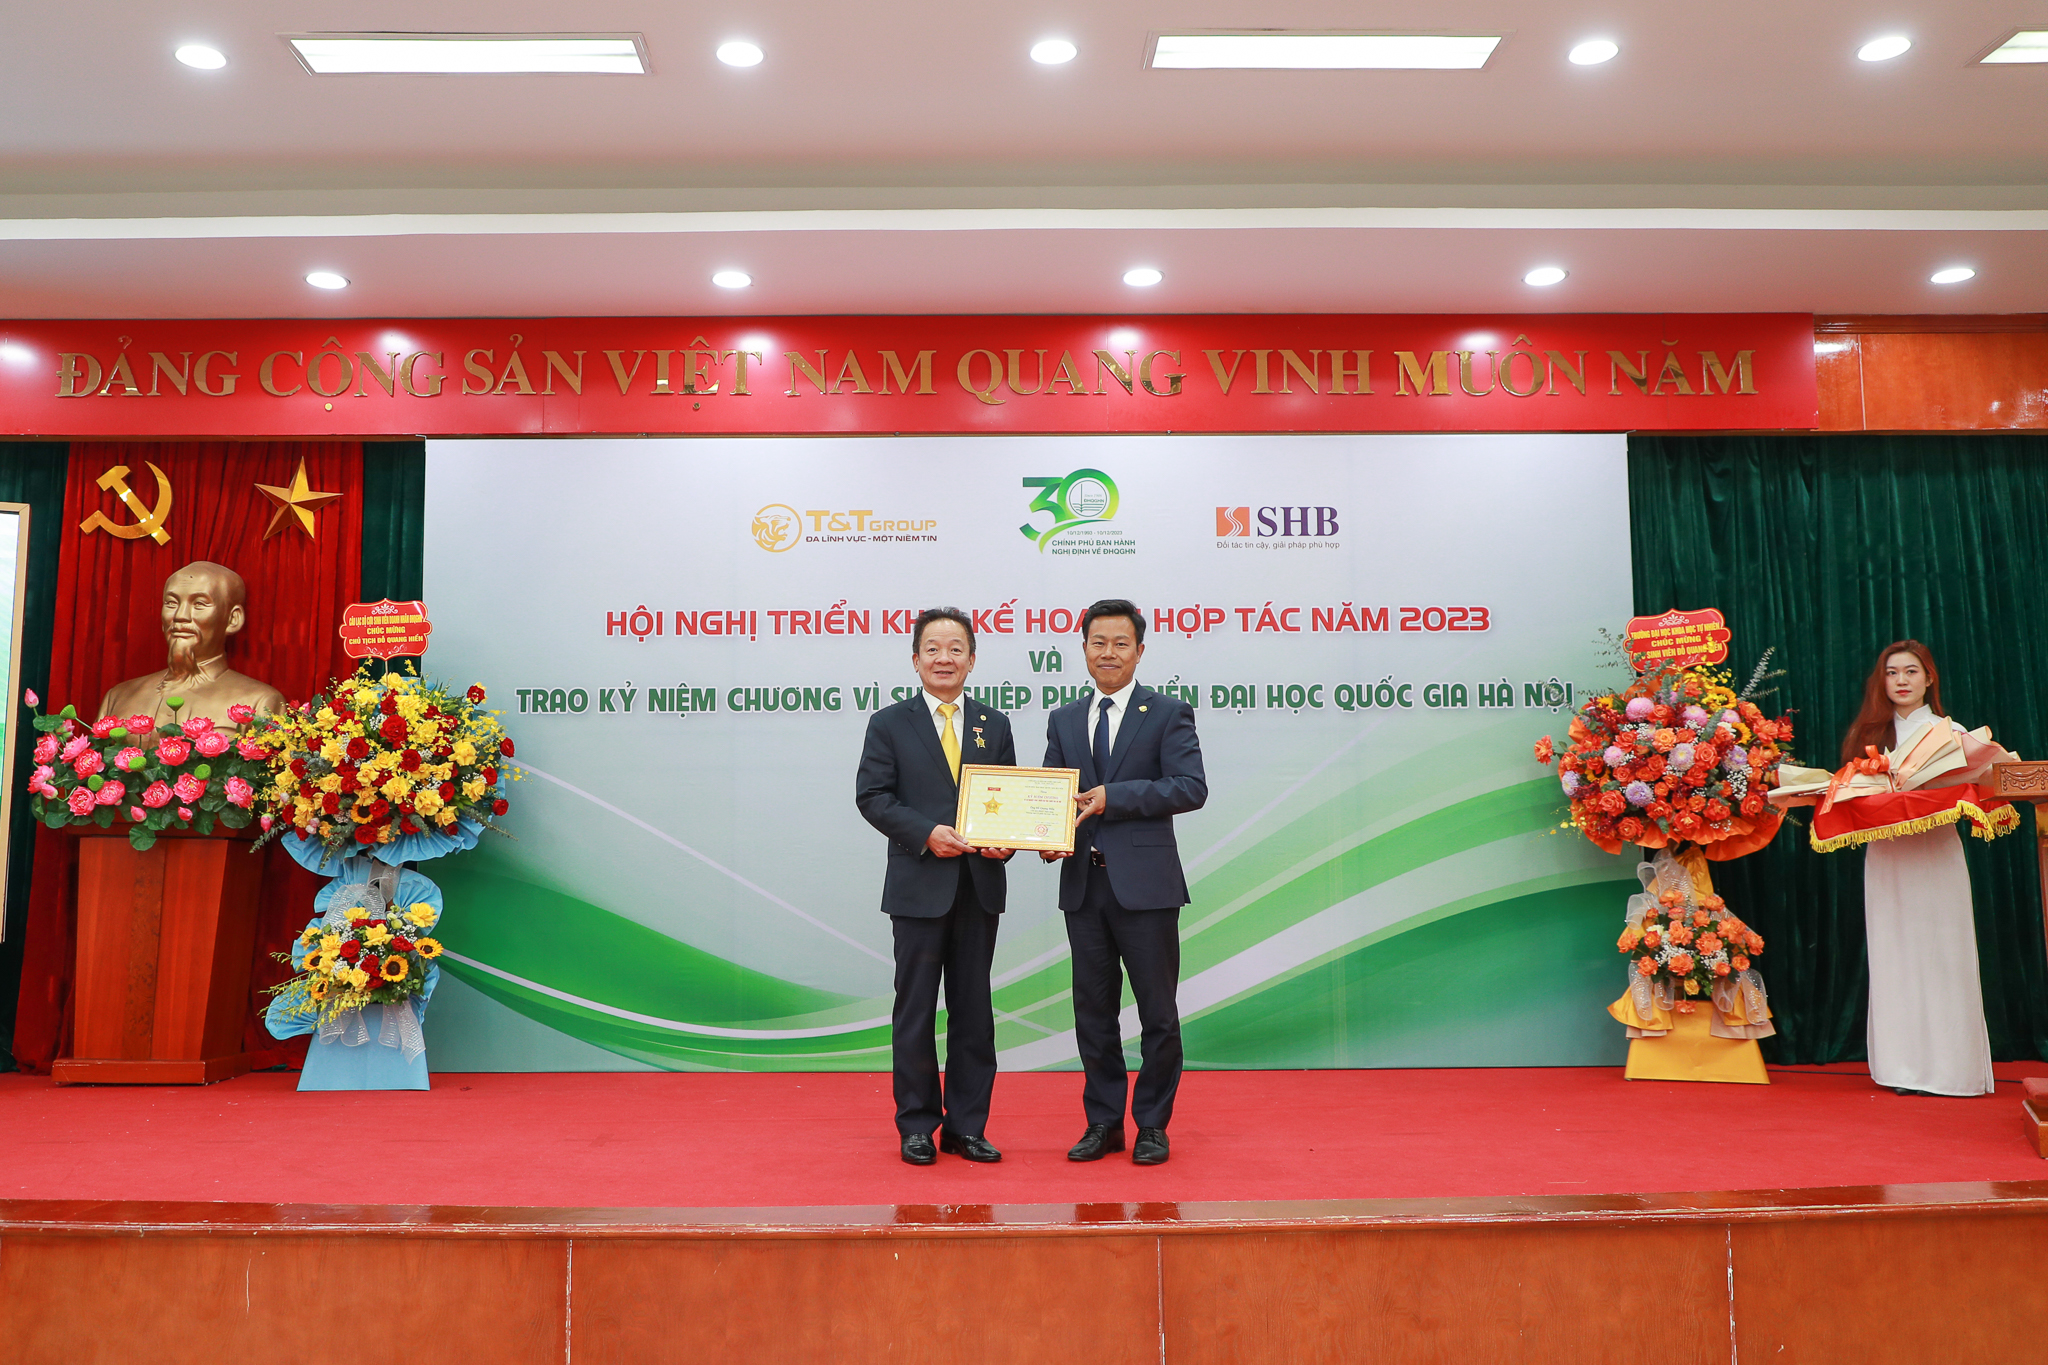  Trao kỷ niệm chương Vì sự nghiệp phát triển ĐHQGHN cho ông Đỗ Quang Hiển - Nhà sáng lập Tập đoàn T&T, Chủ tịch HĐQT Ngân hàng SHB